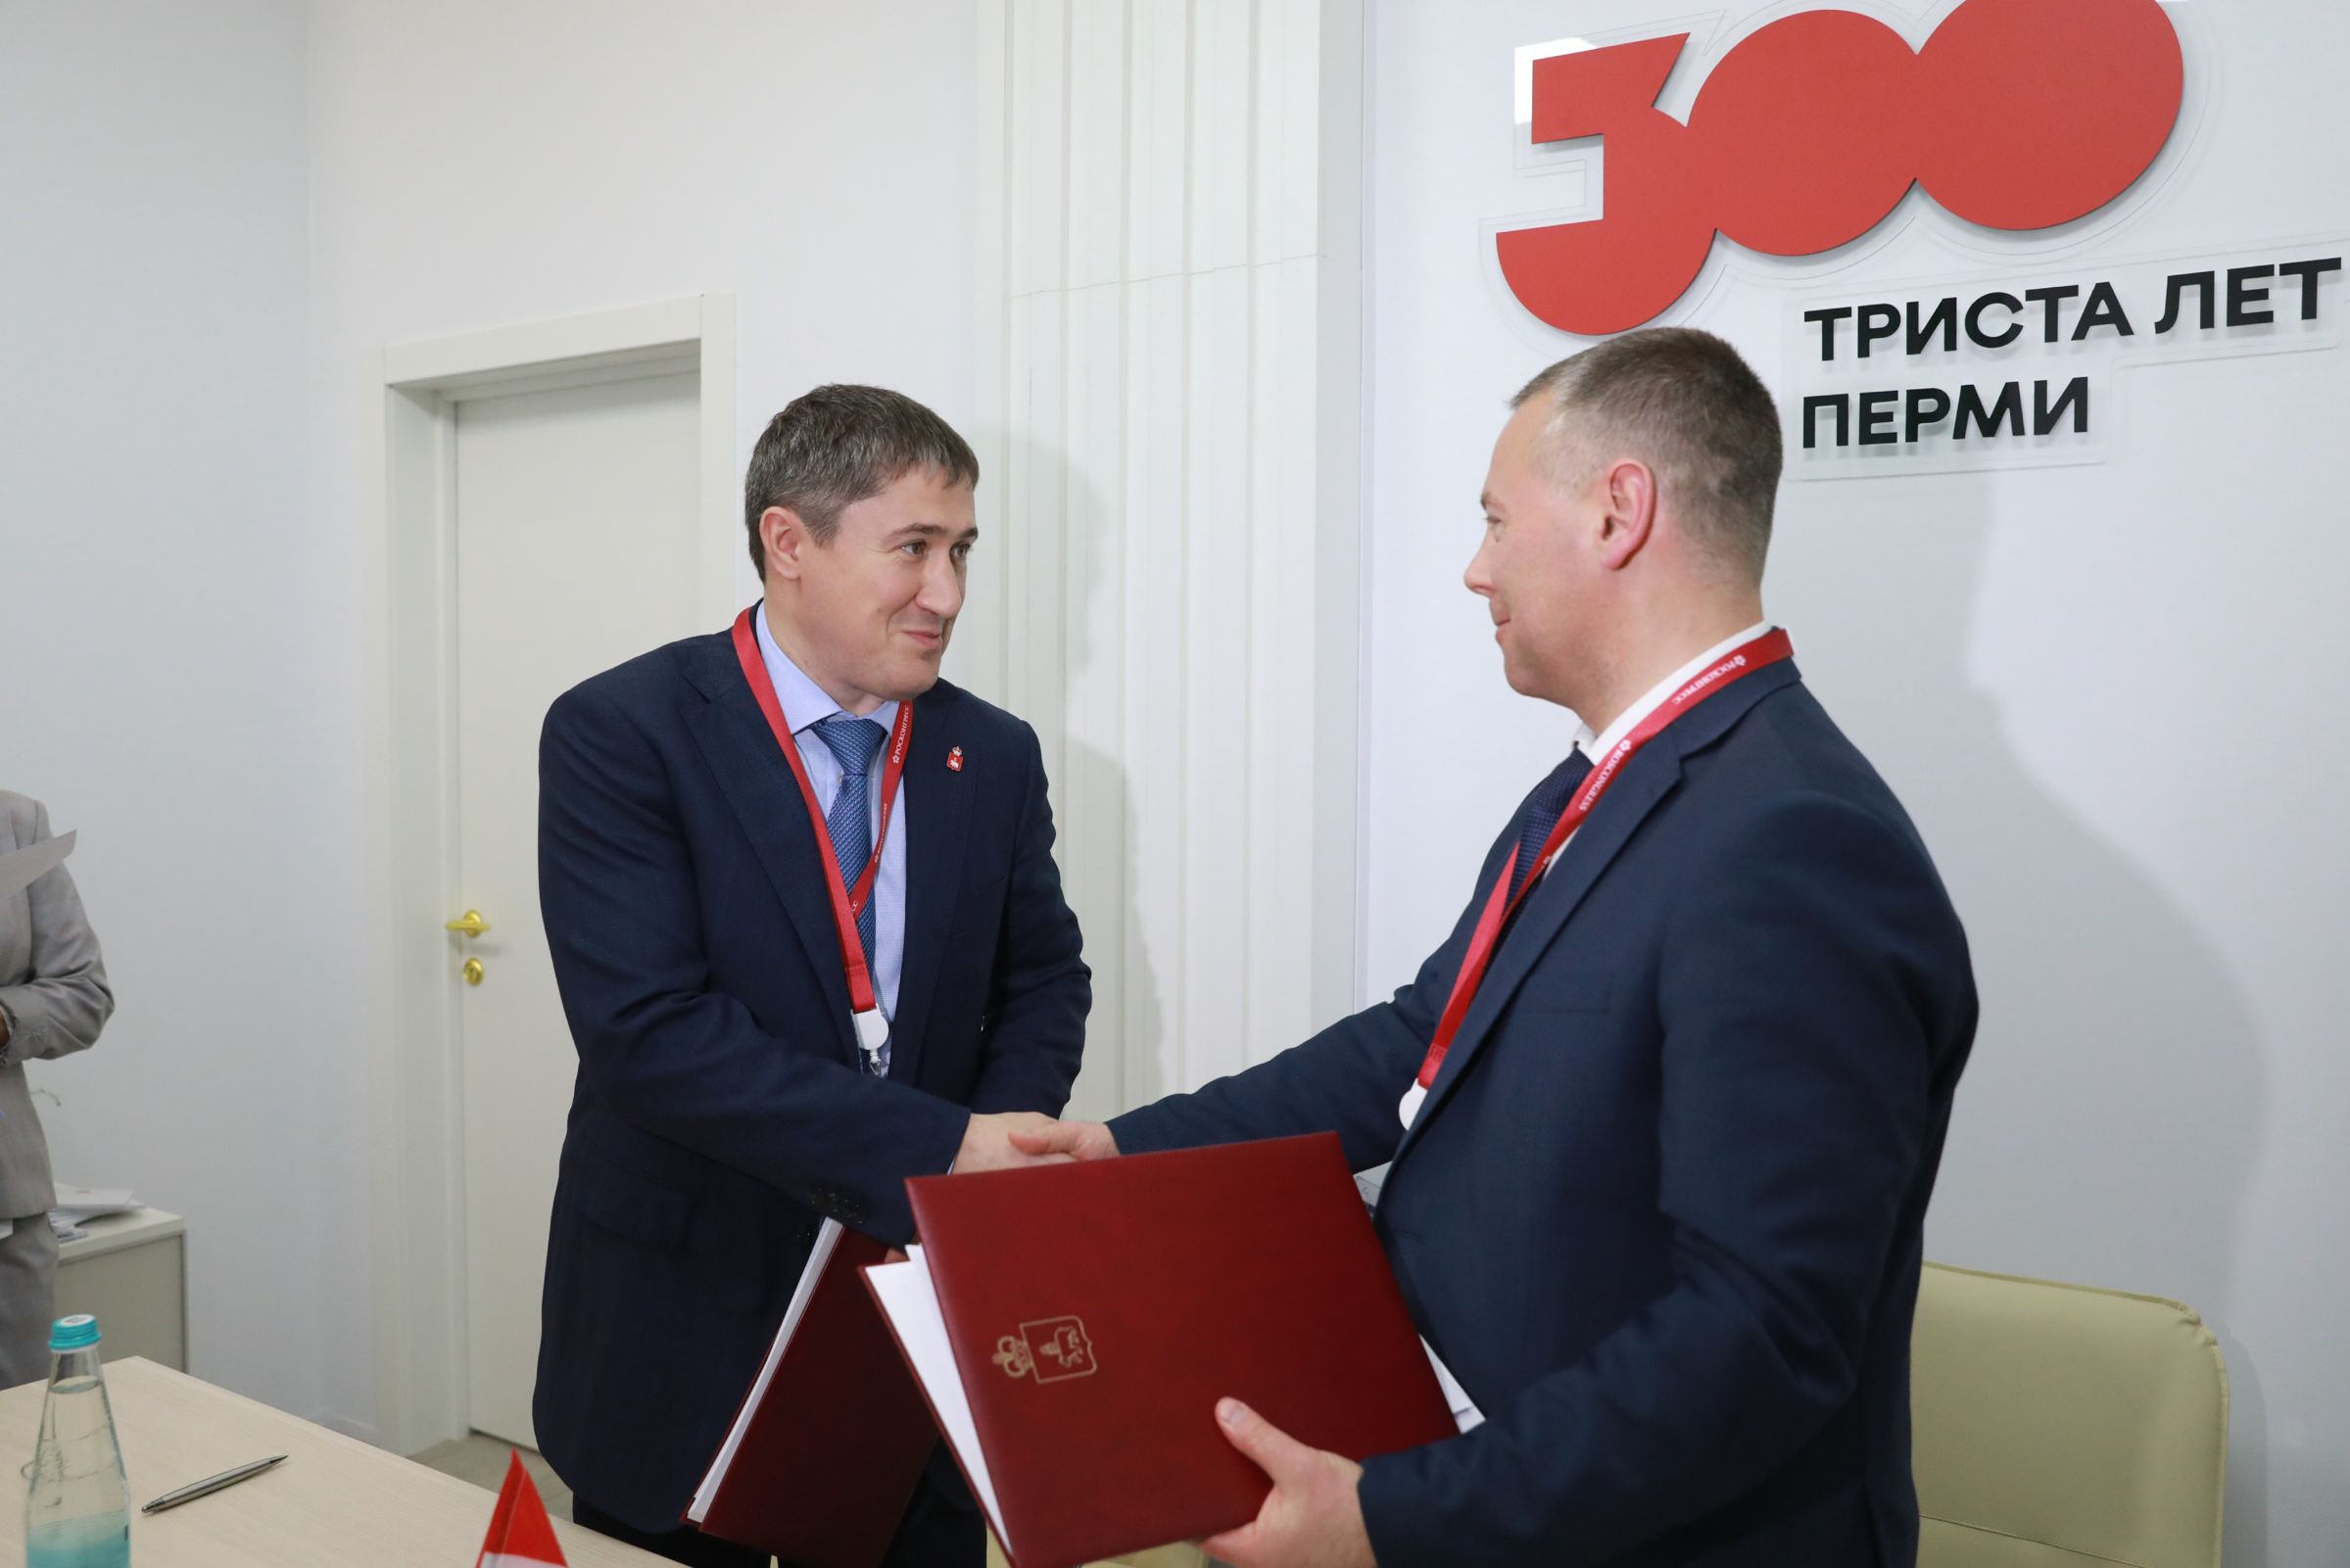 Правительство Ярославской области планирует развивать сотрудничество с Пермским краем